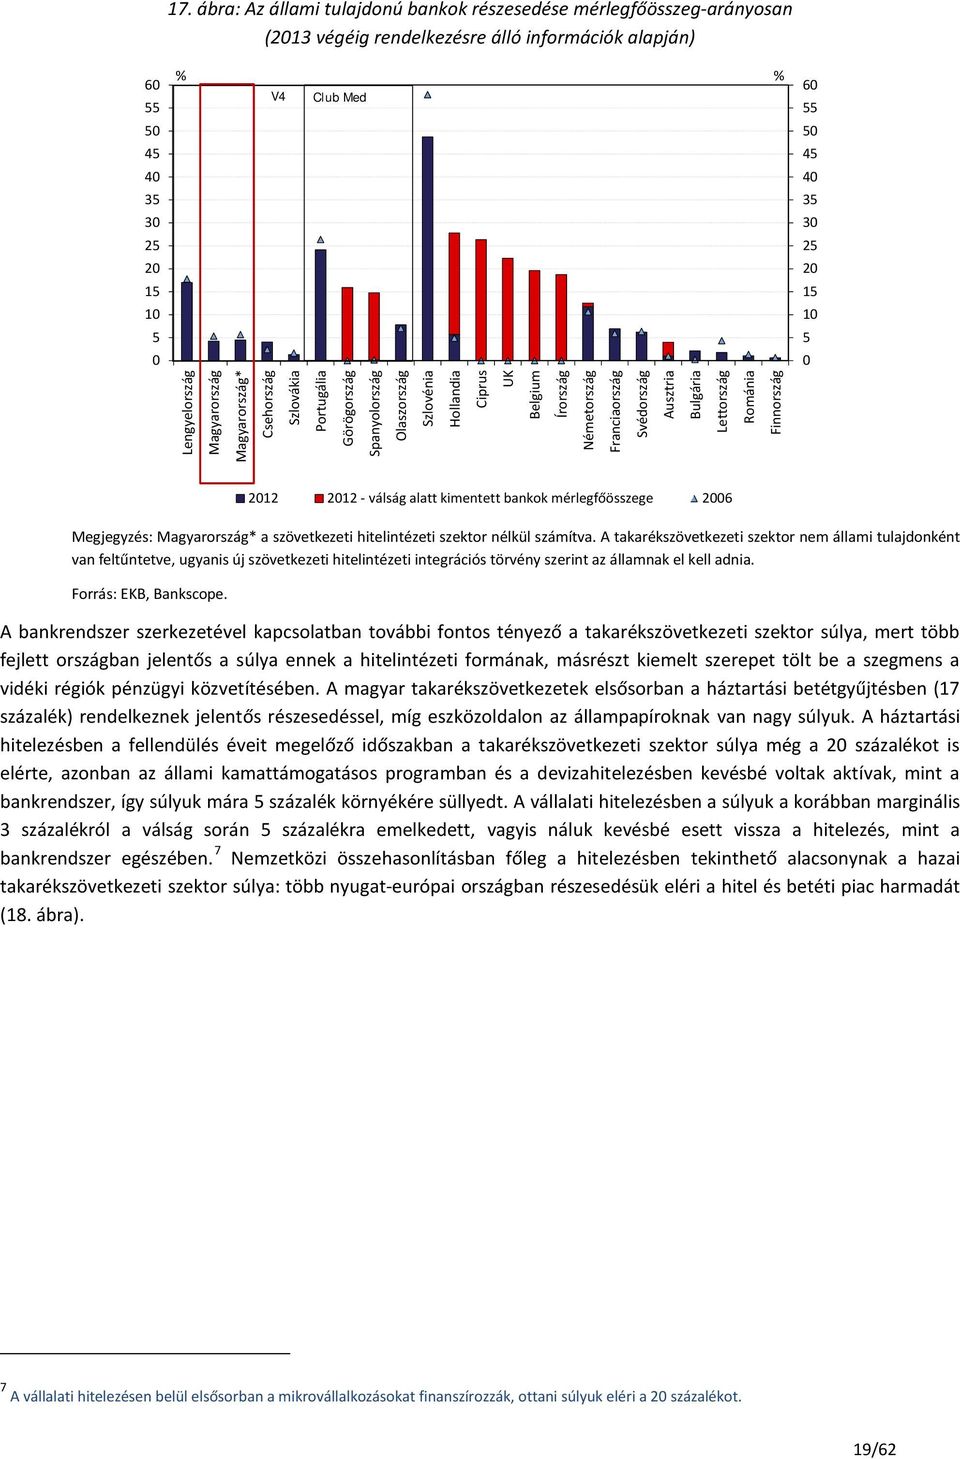 Ausztria Bulgária Lettország Románia Finnország Megjegyzés: Magyarország* a szövetkezeti hitelintézeti szektor nélkül számítva.